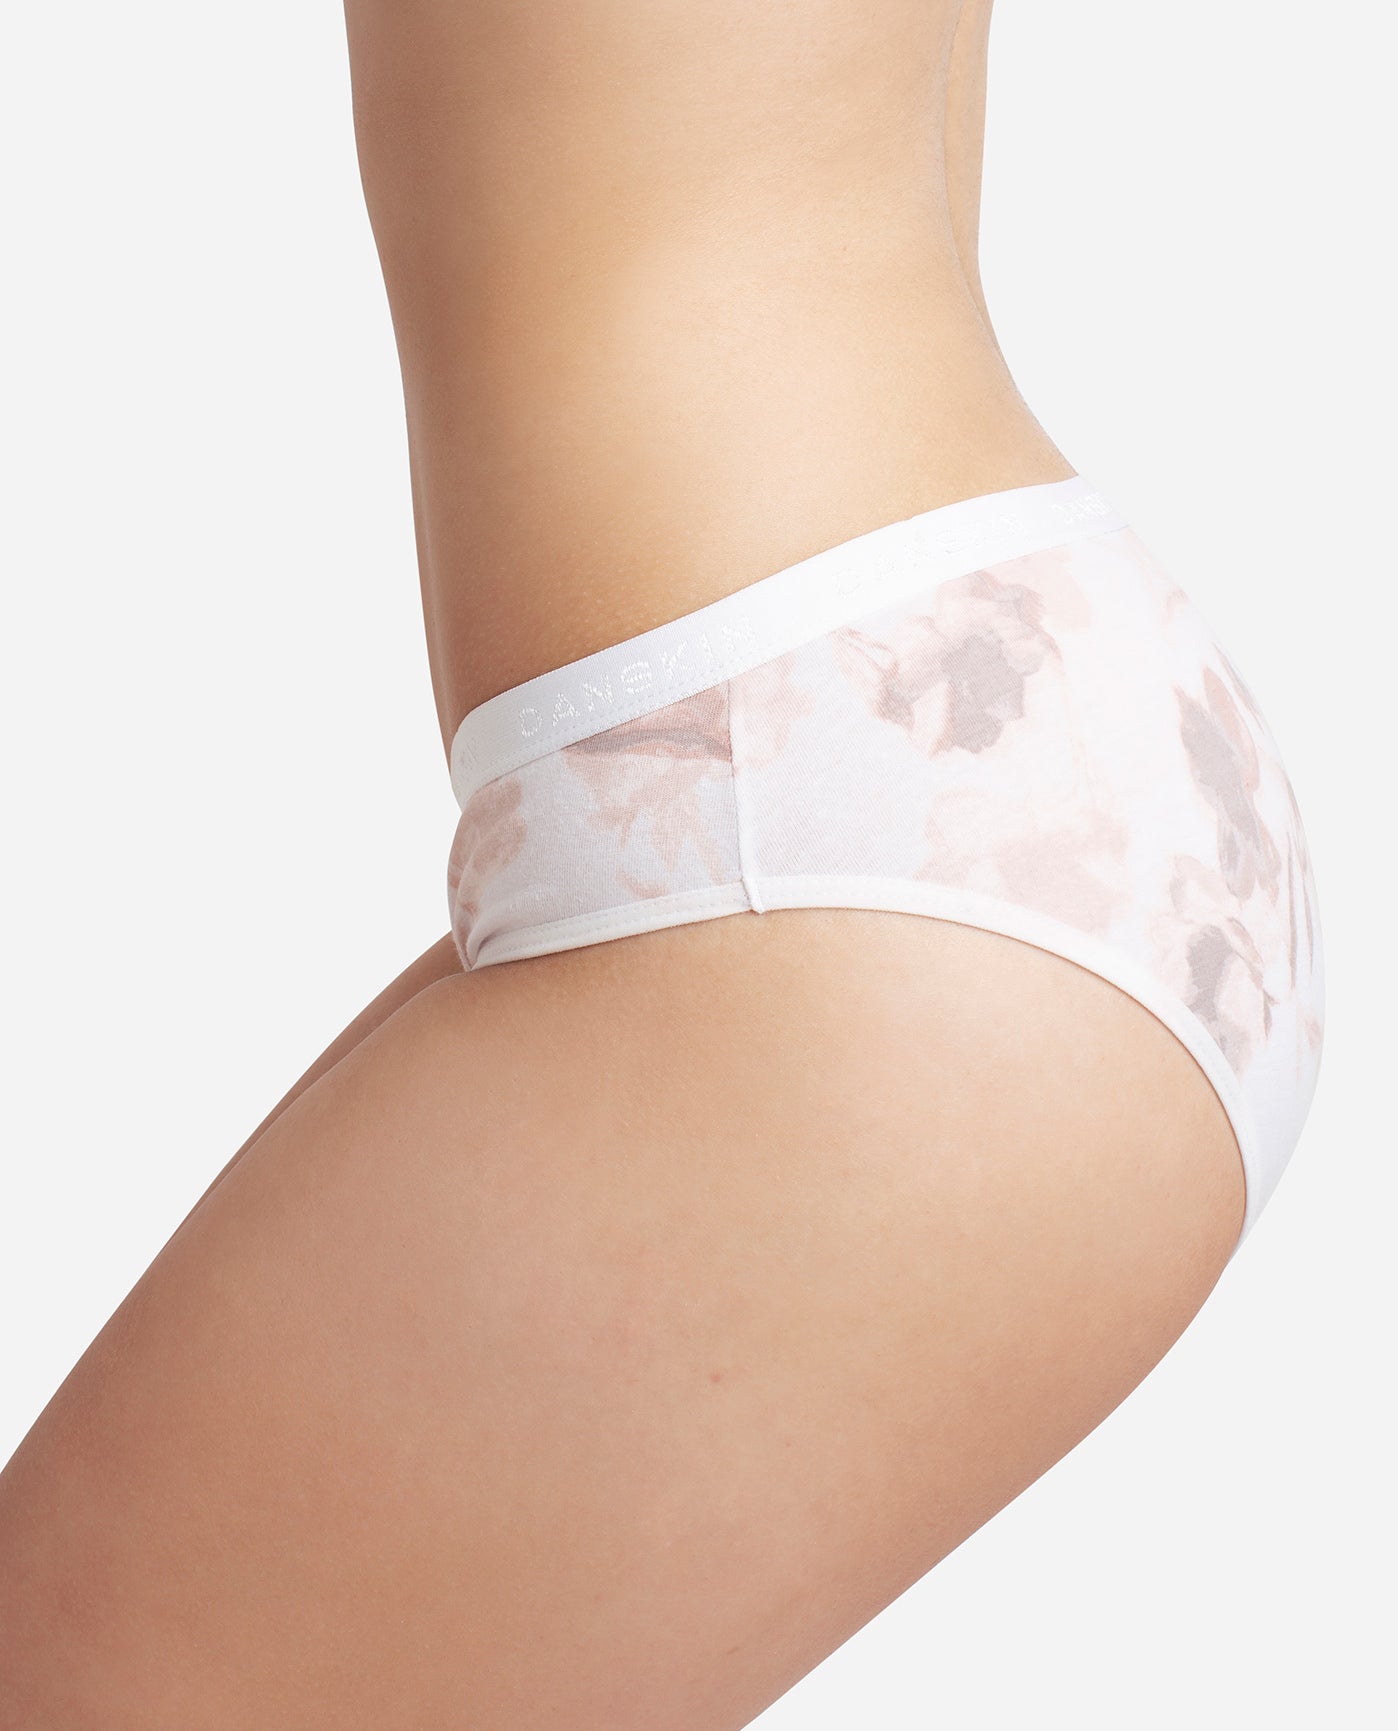 Women's cotton panties Girl Briefs Ms. cotton underwear bikini underwear  sexy Ladies Briefs Free shipping 5 Pcs/set